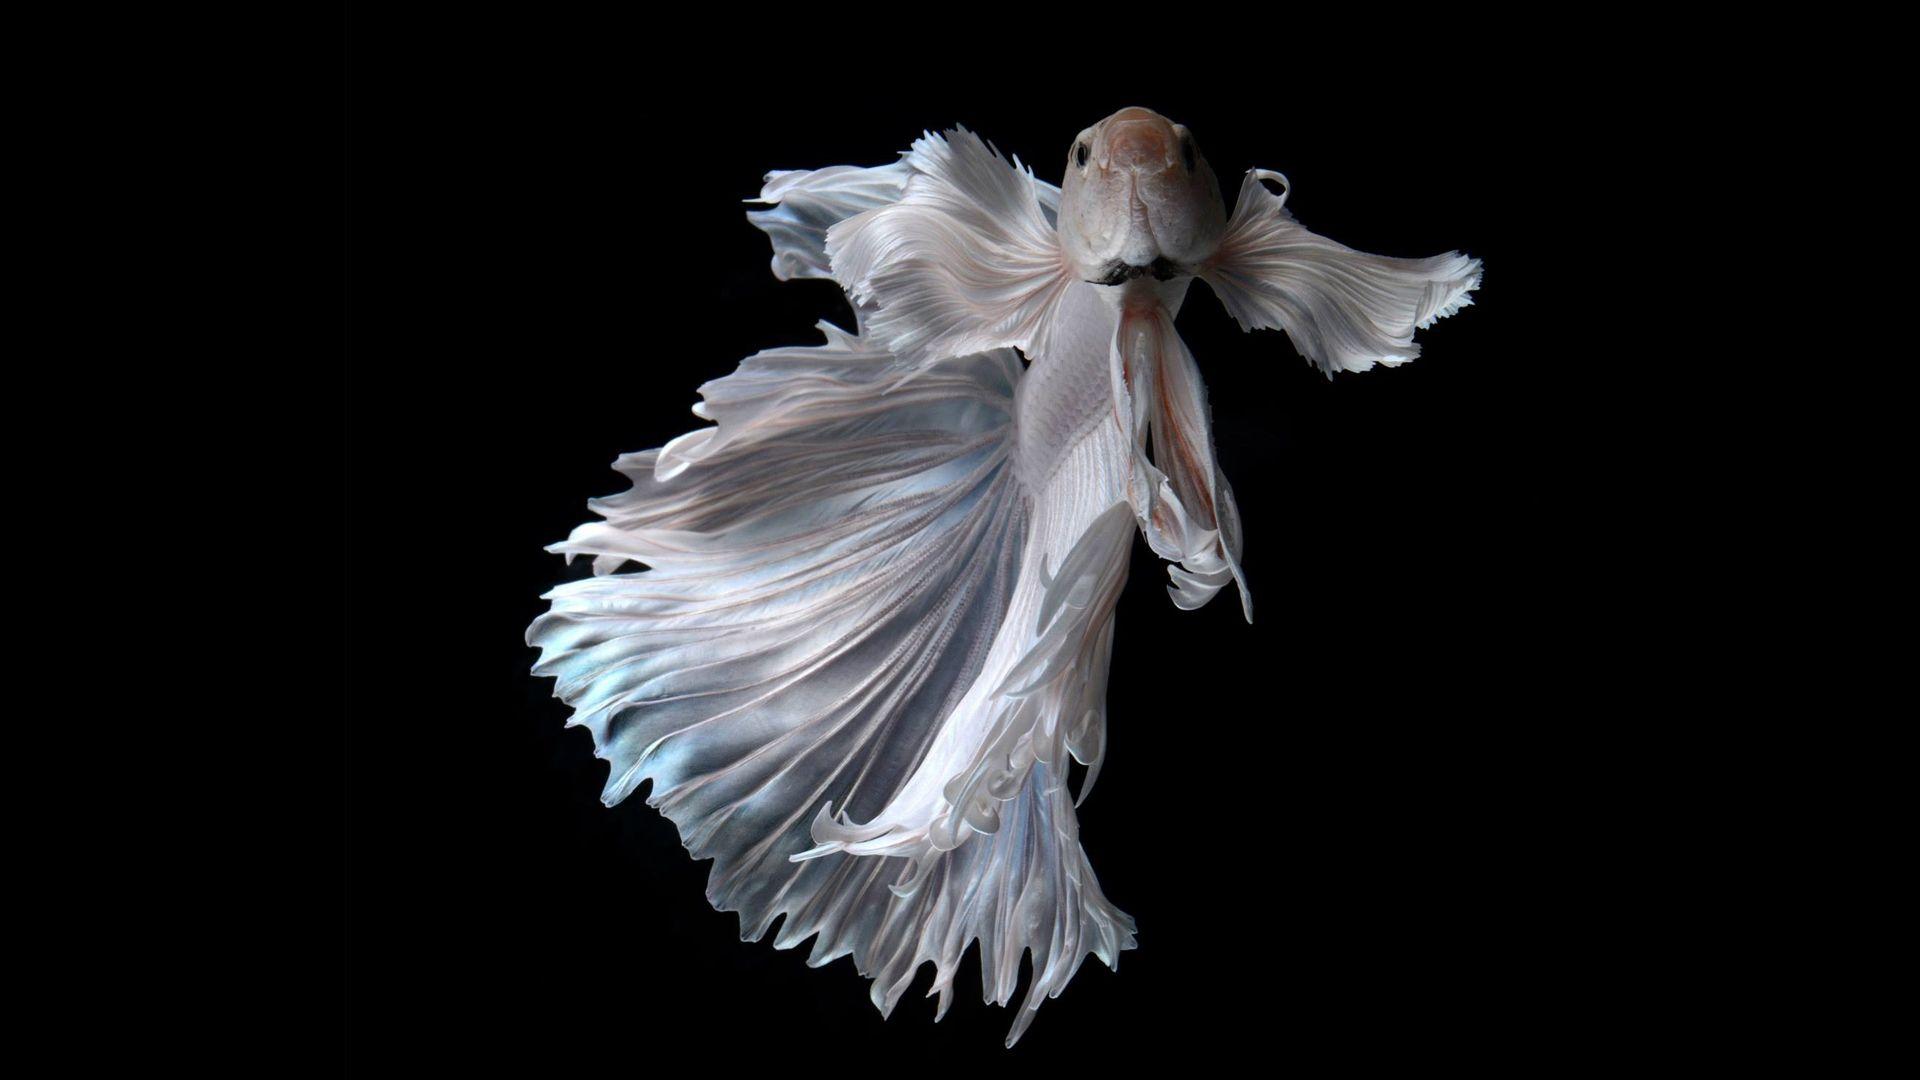 Albino Betta Fish Picture 14 of 20 Wallpaper in HD 1080p. HD